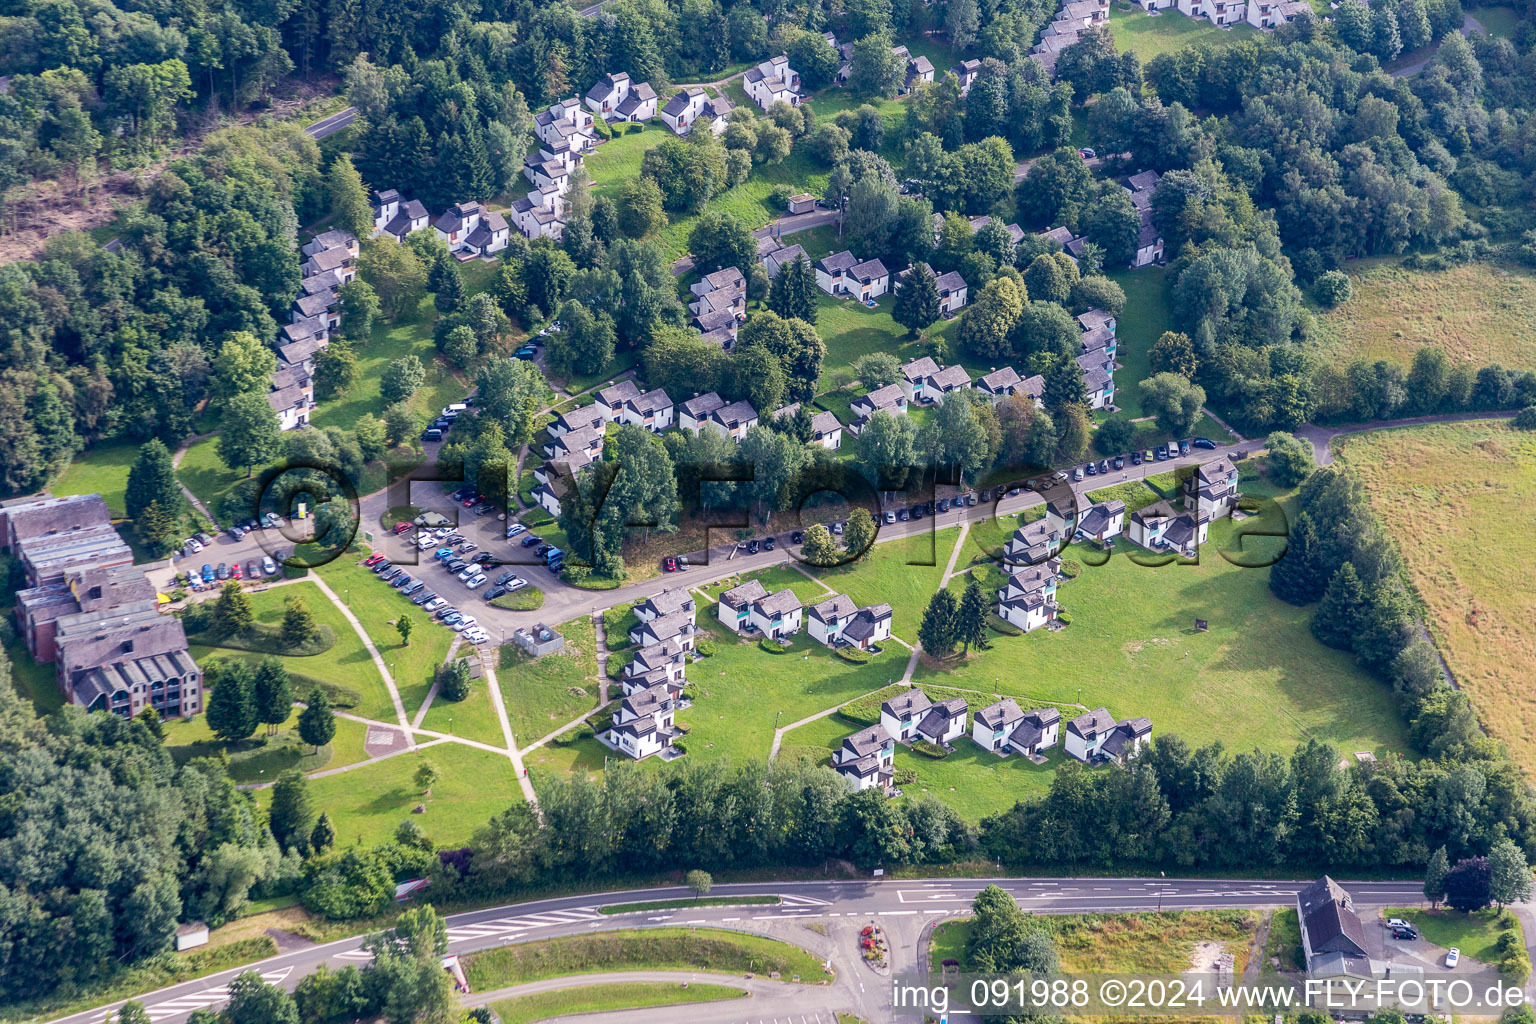 Luftbild von Ferienhaus- Anlage des Ferienparks Ferienpark Hambachtal in Oberhambach im Bundesland Rheinland-Pfalz, Deutschland